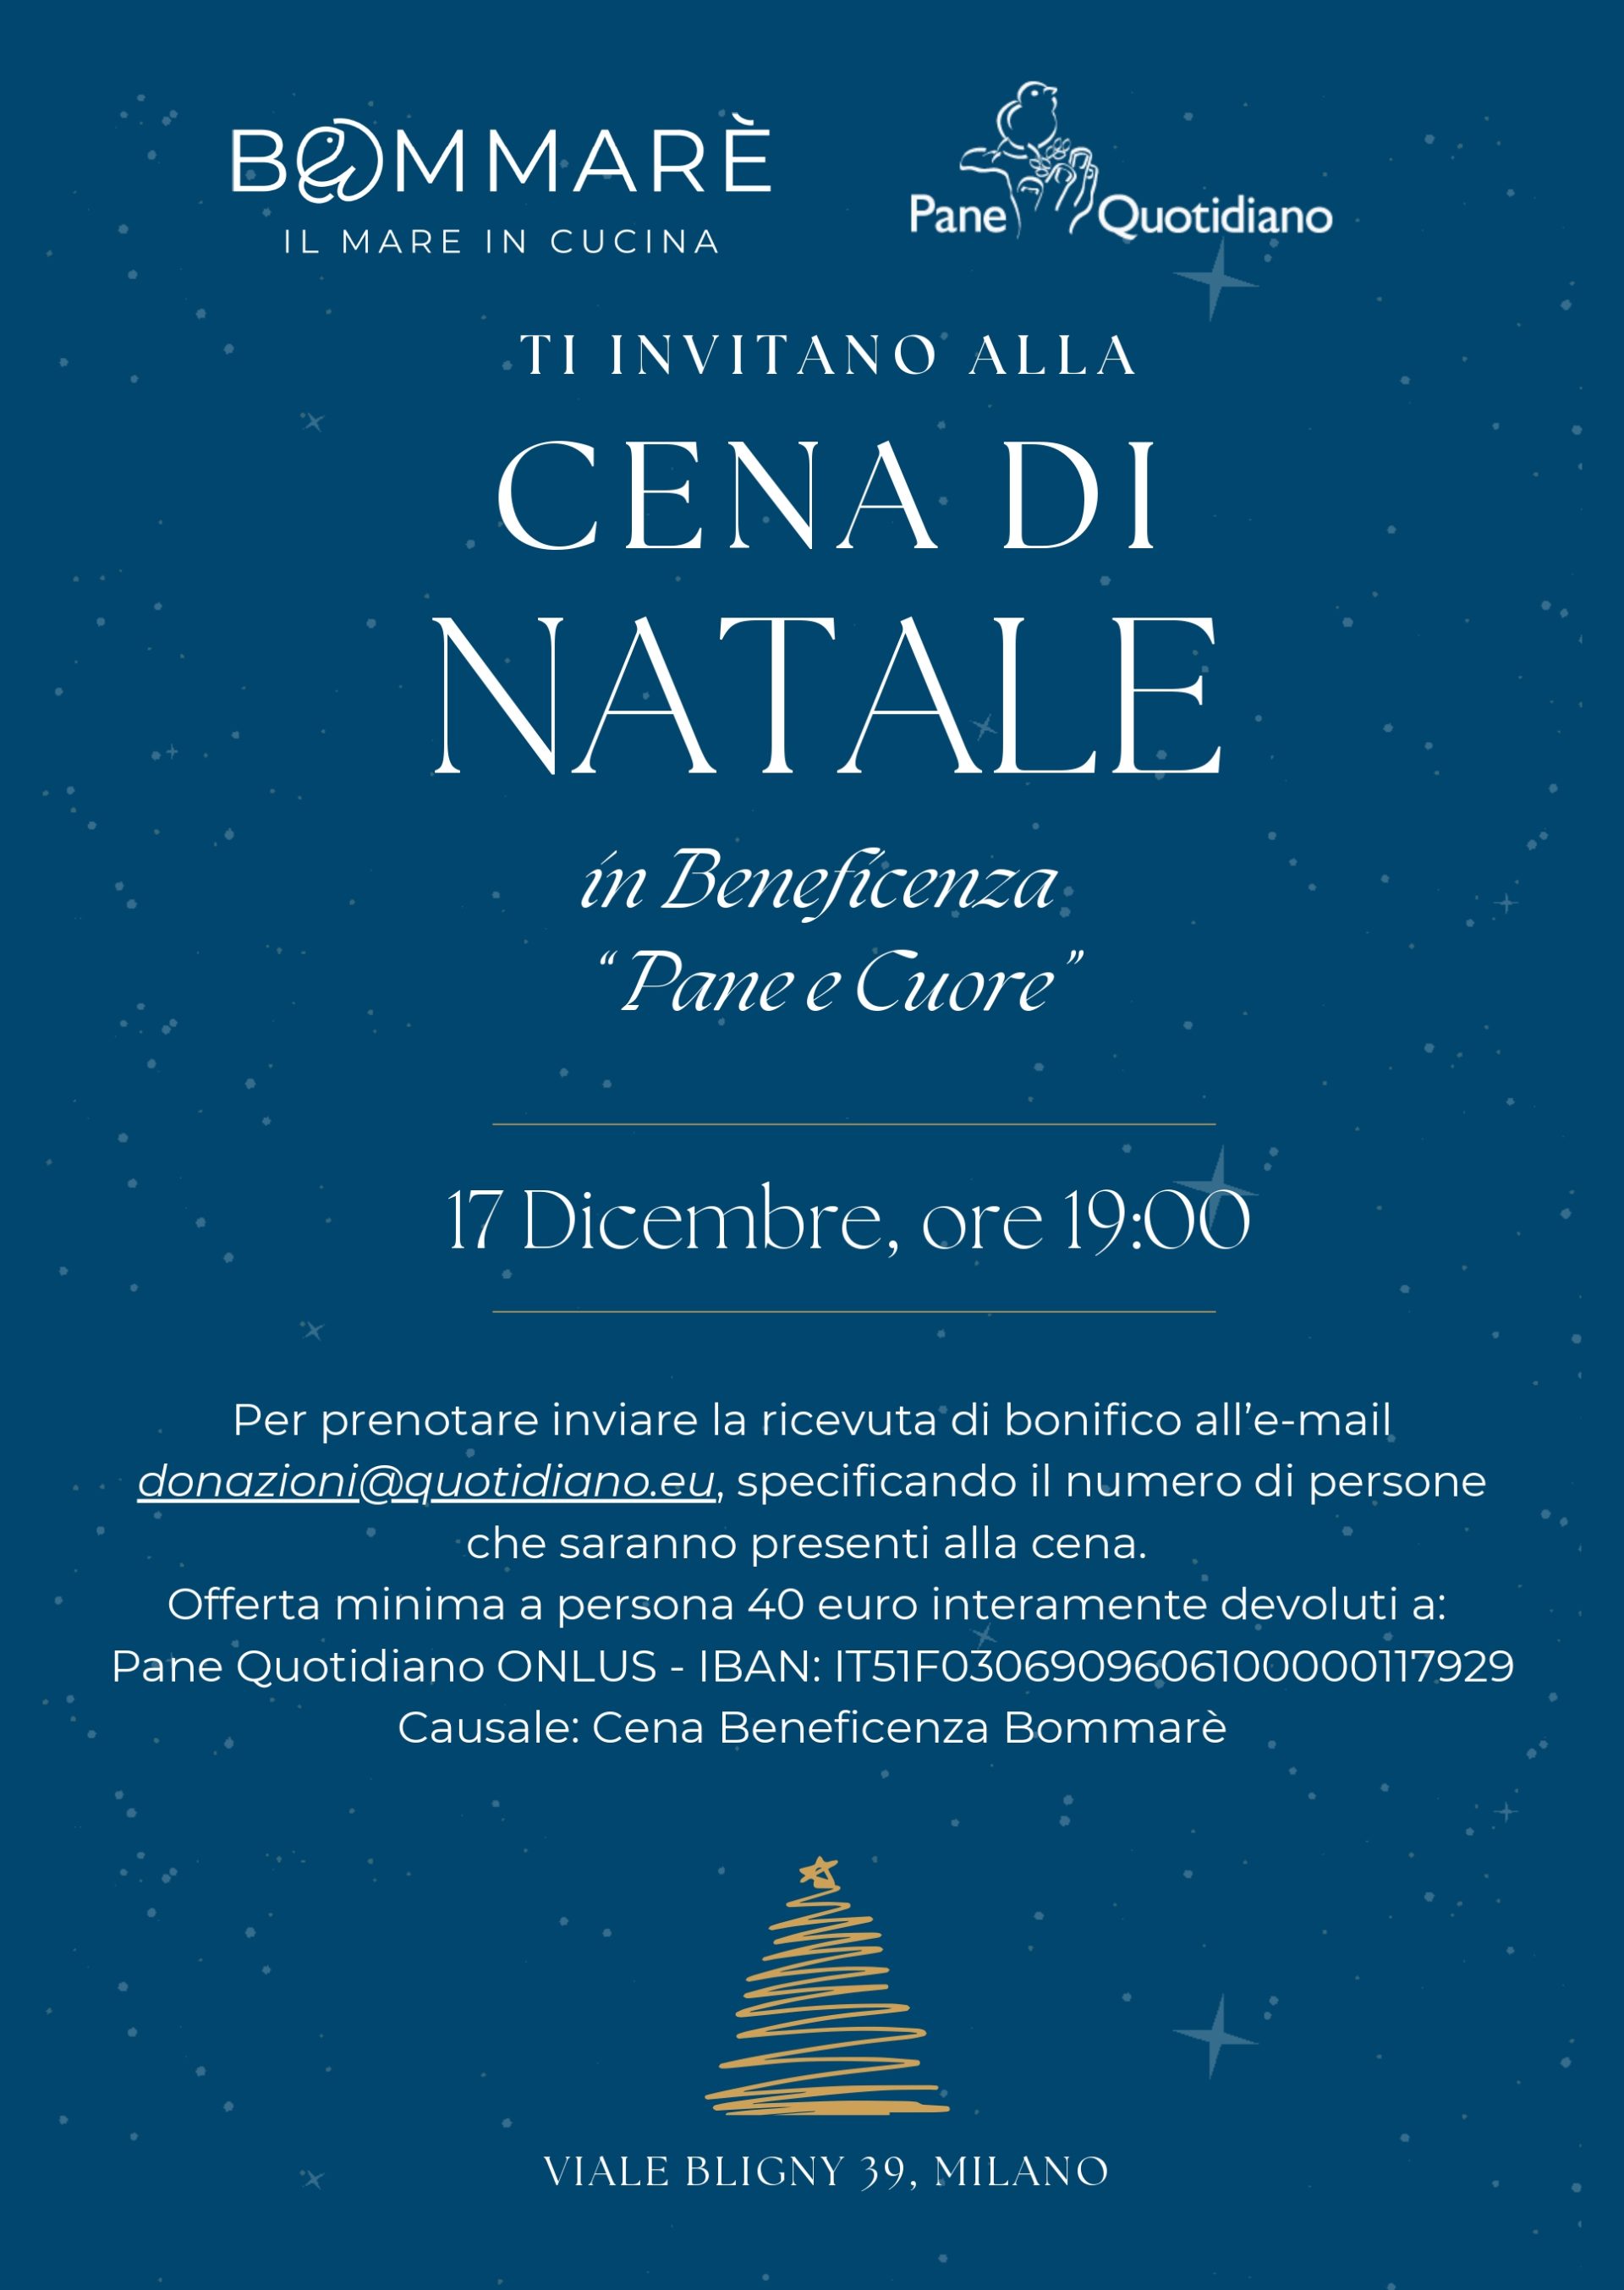 Bommarè Milano: cena di Natale per la ONLUS Pane Quotidiano